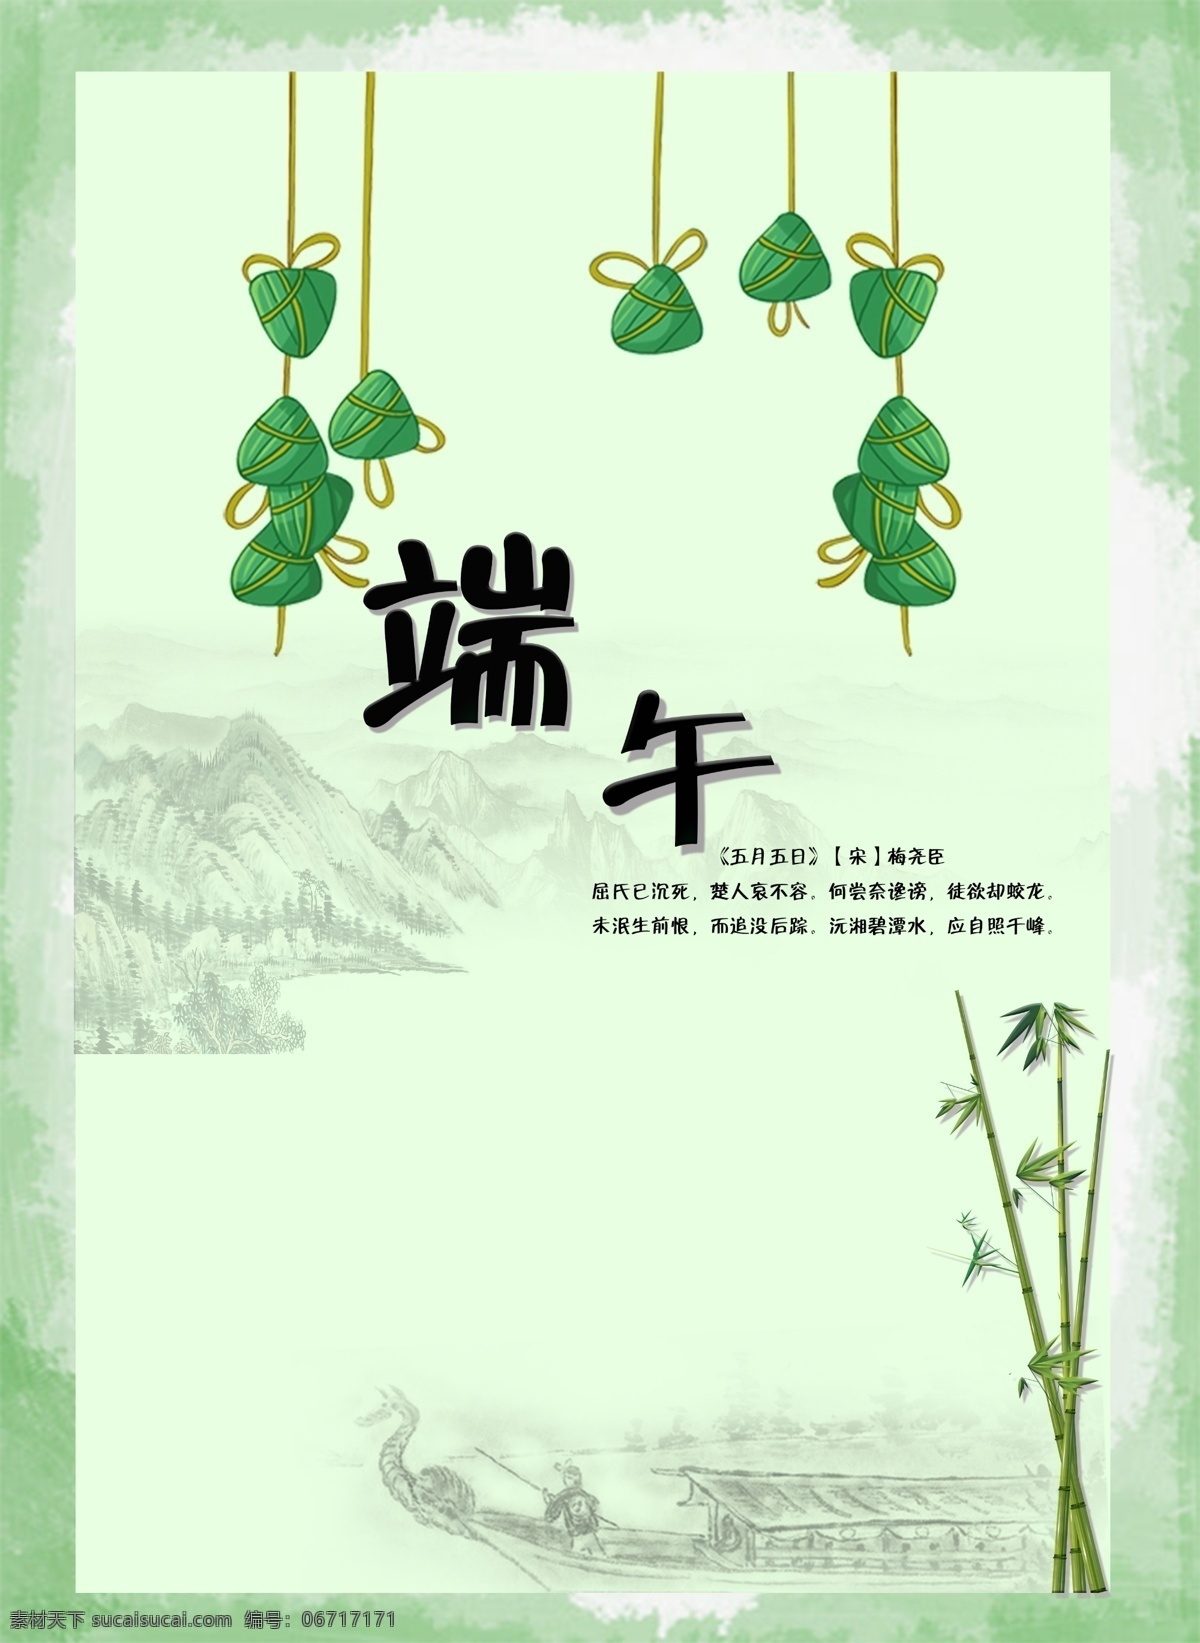 端午节 高清 端午 卡通 山水 粽子 海报 简约 美食 屈原 赛龙舟 传统节日 竹子